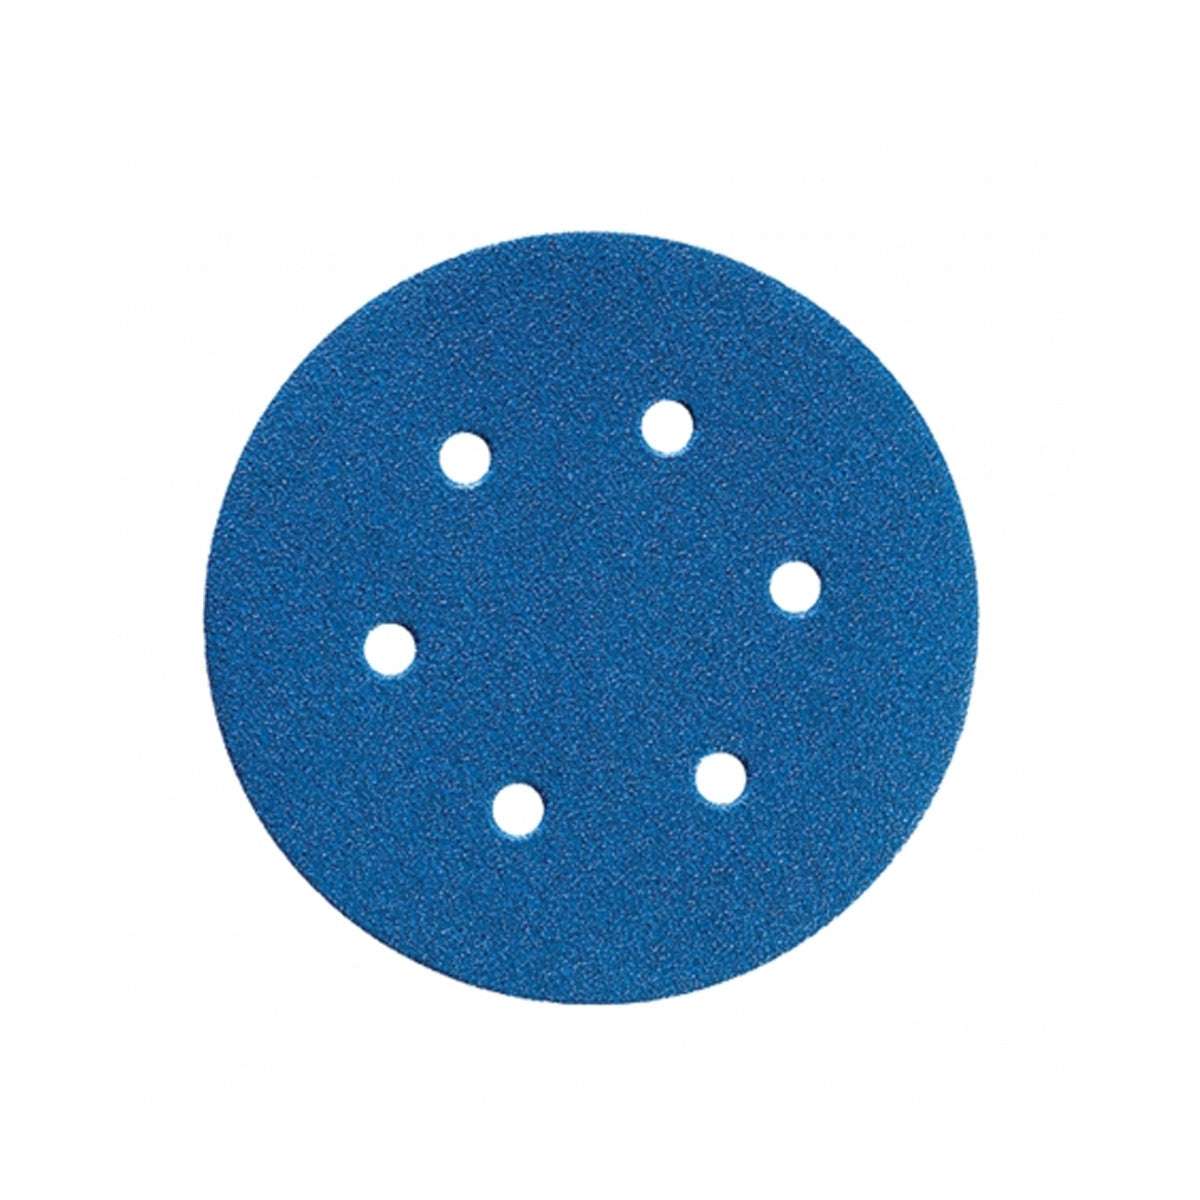 BLUE FIRE H835 203 velcro discs 8H - Norton